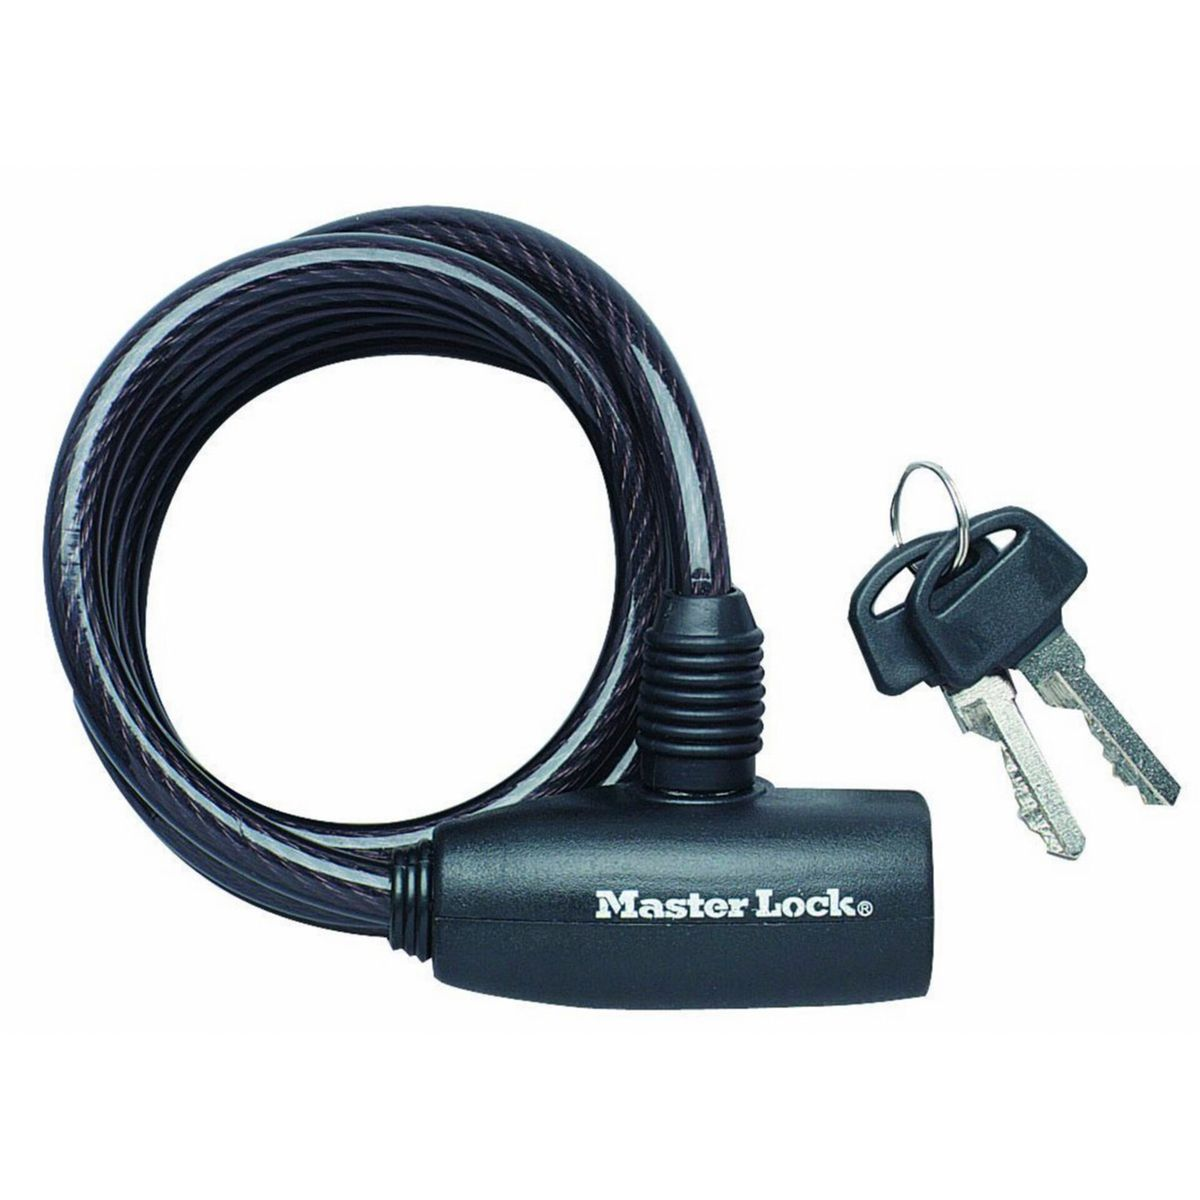 MASTERLOCK Master Lock Spiralkabelschloss 8126EURDPRO, 8mm schwarz)